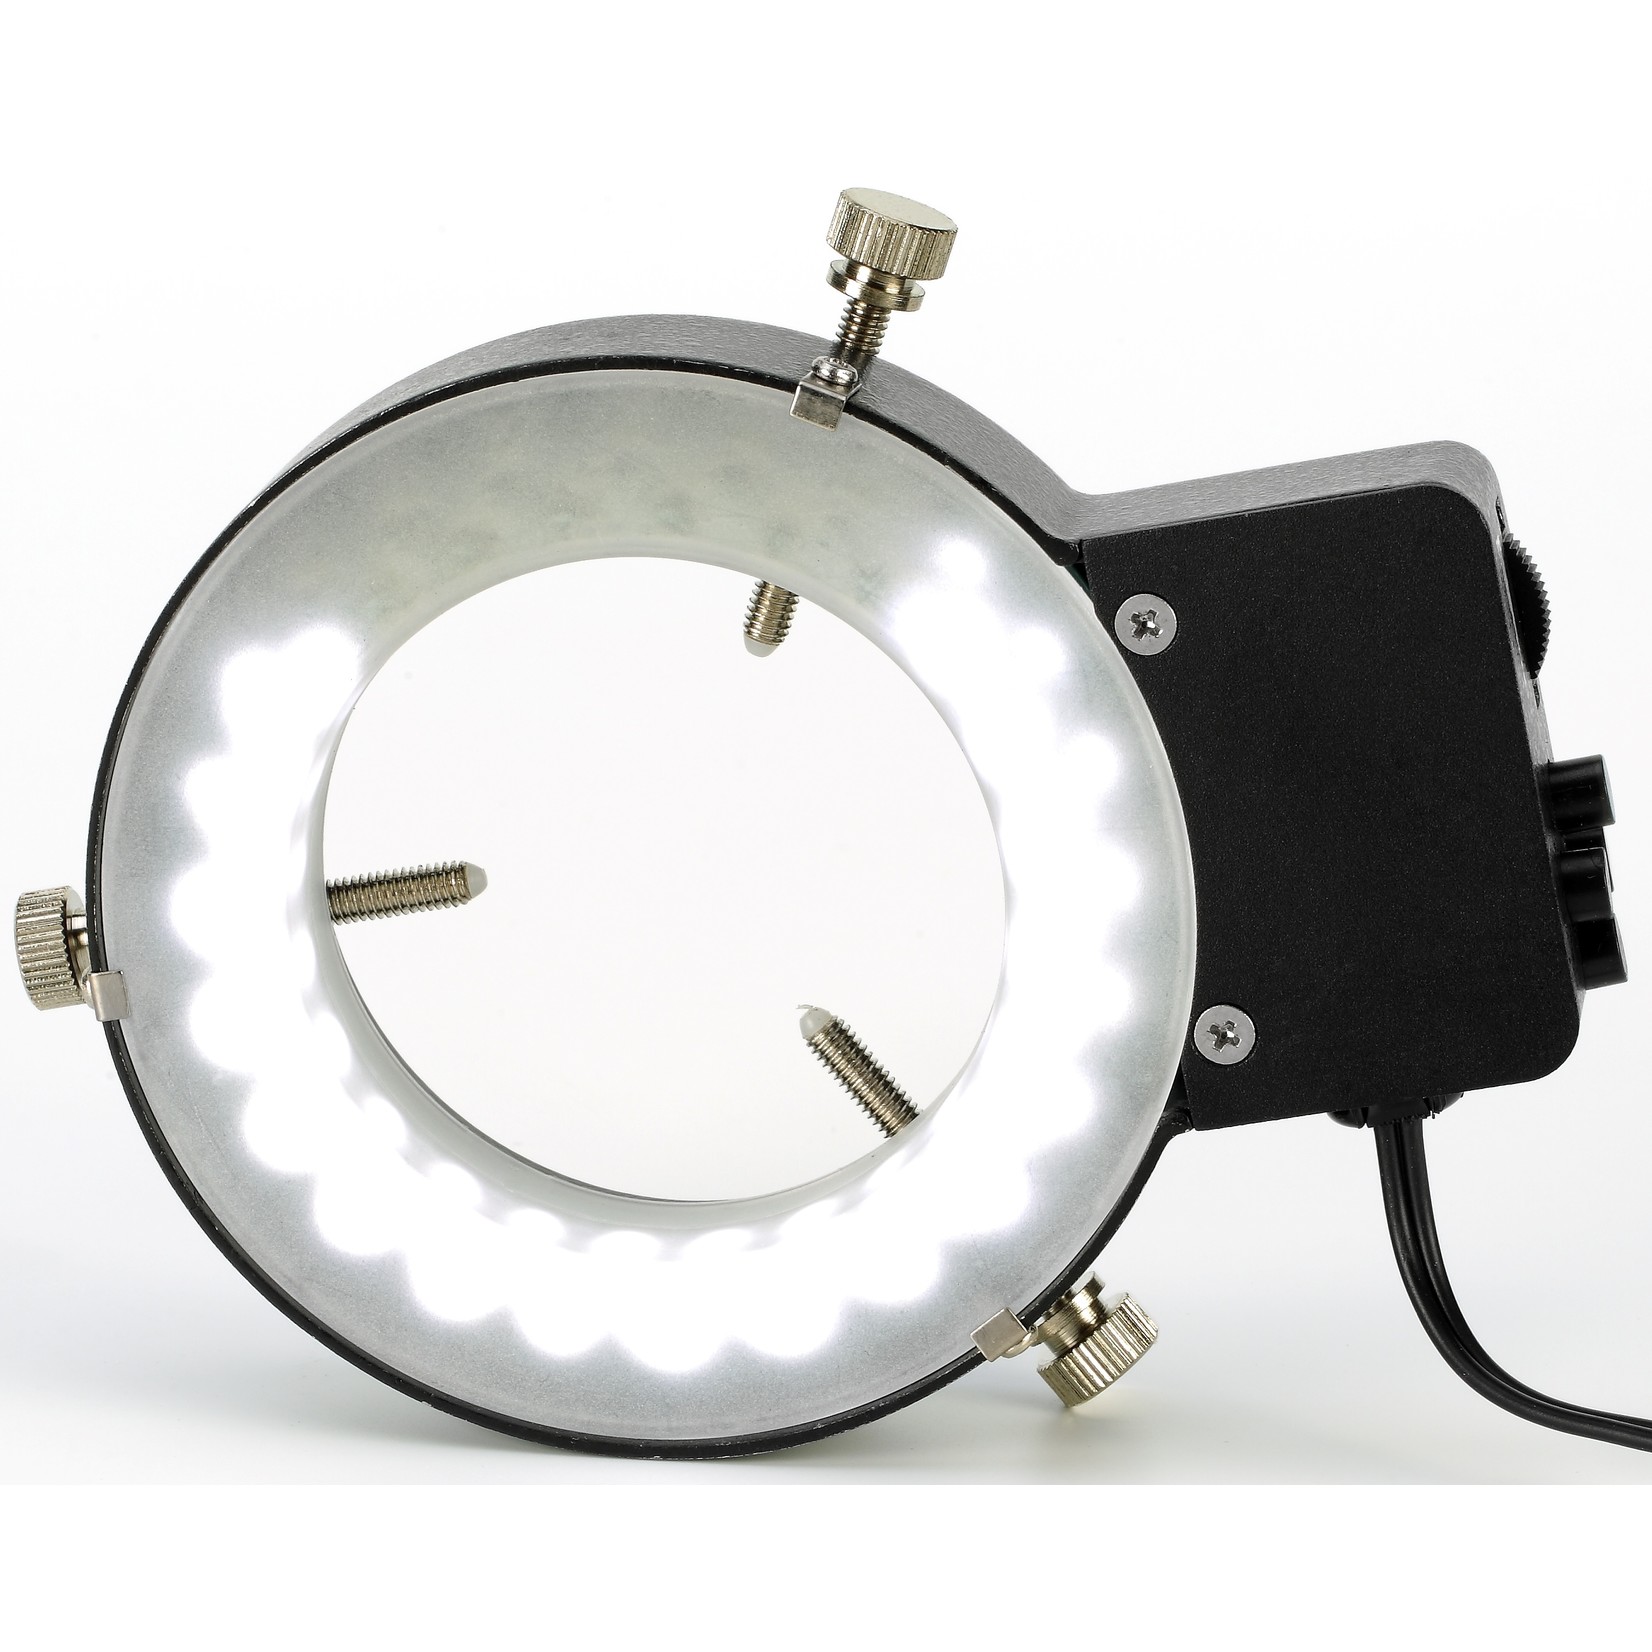 Anel de luz LED com 144 LEDs, difusor, escurecimento e comutação de segmentos